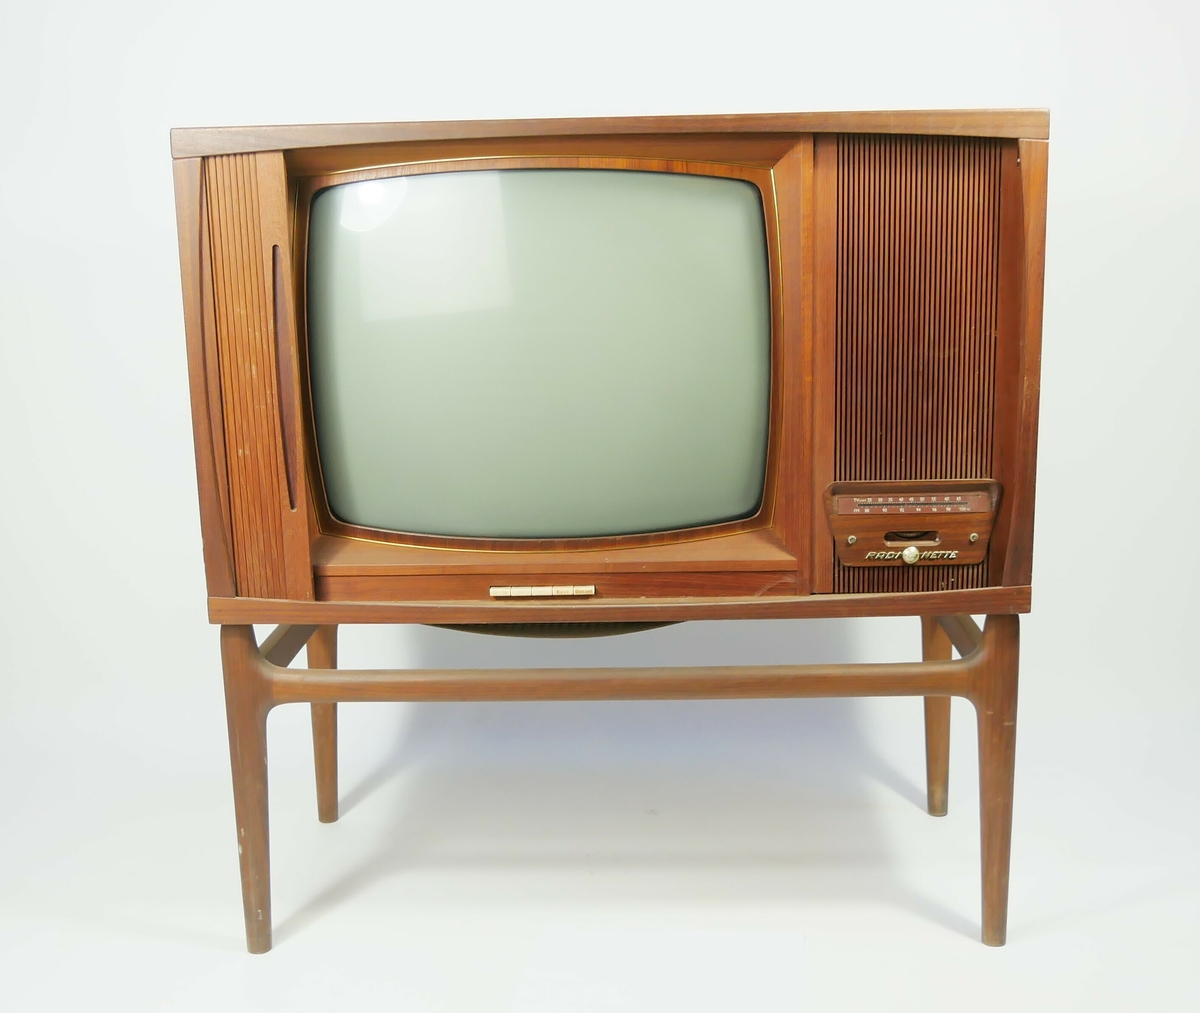 Rektangulært fjernsynsapparat som står på fire bein. Foran på den en siden er det en treskjerm foran tvskjermen som kan skyves til siden. 